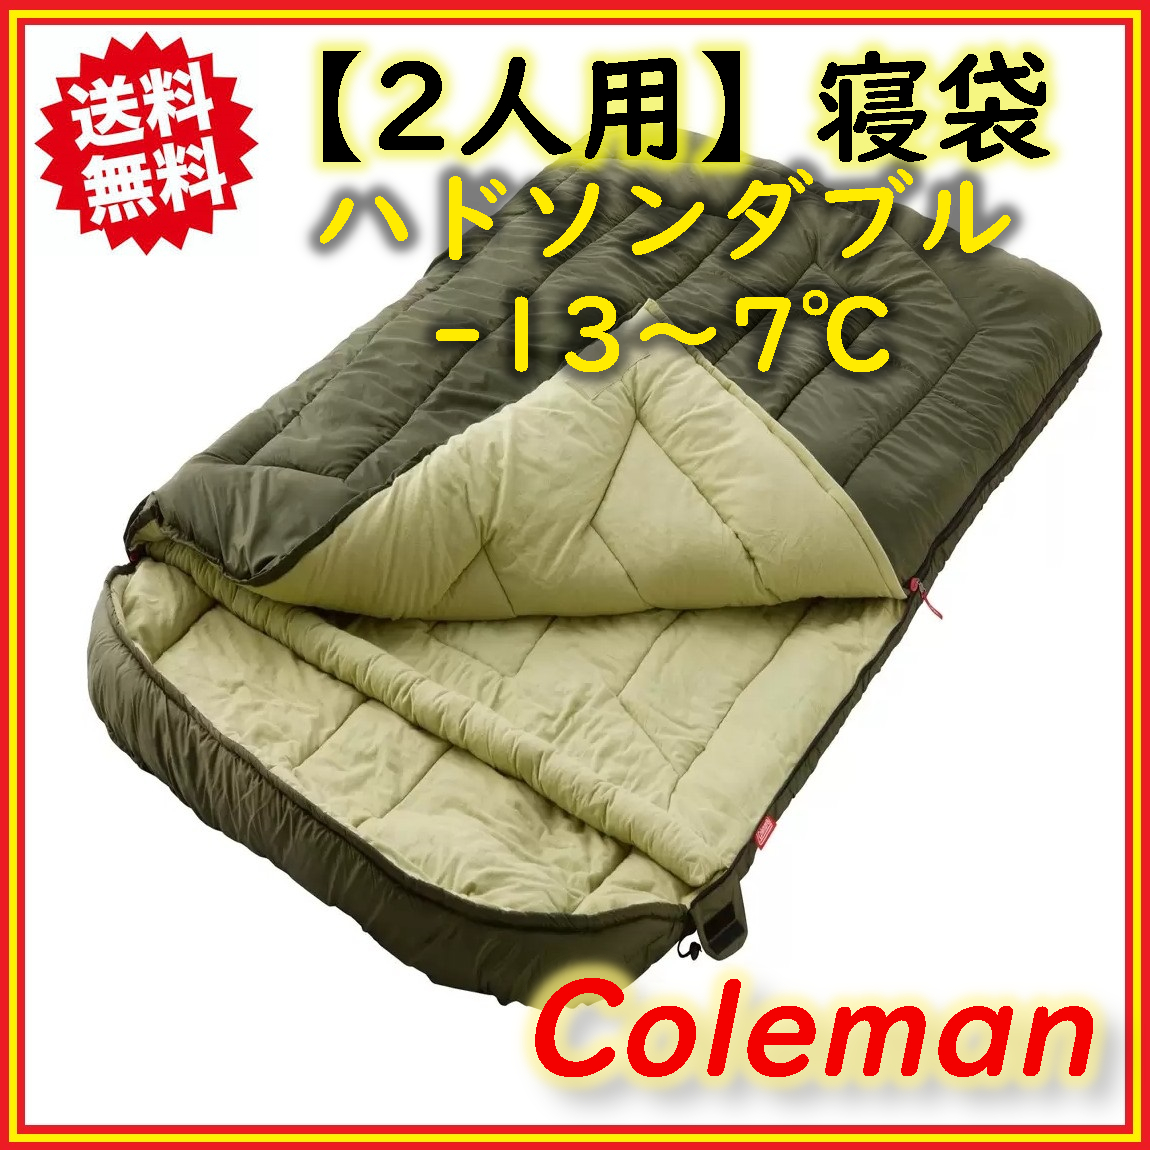 Coleman(コールマン) ハドソンダブル シュラフ 寝袋 2人用 封筒型 -13℃〜7℃対応 夏・冬アウトドア用 コストコ 送料無料